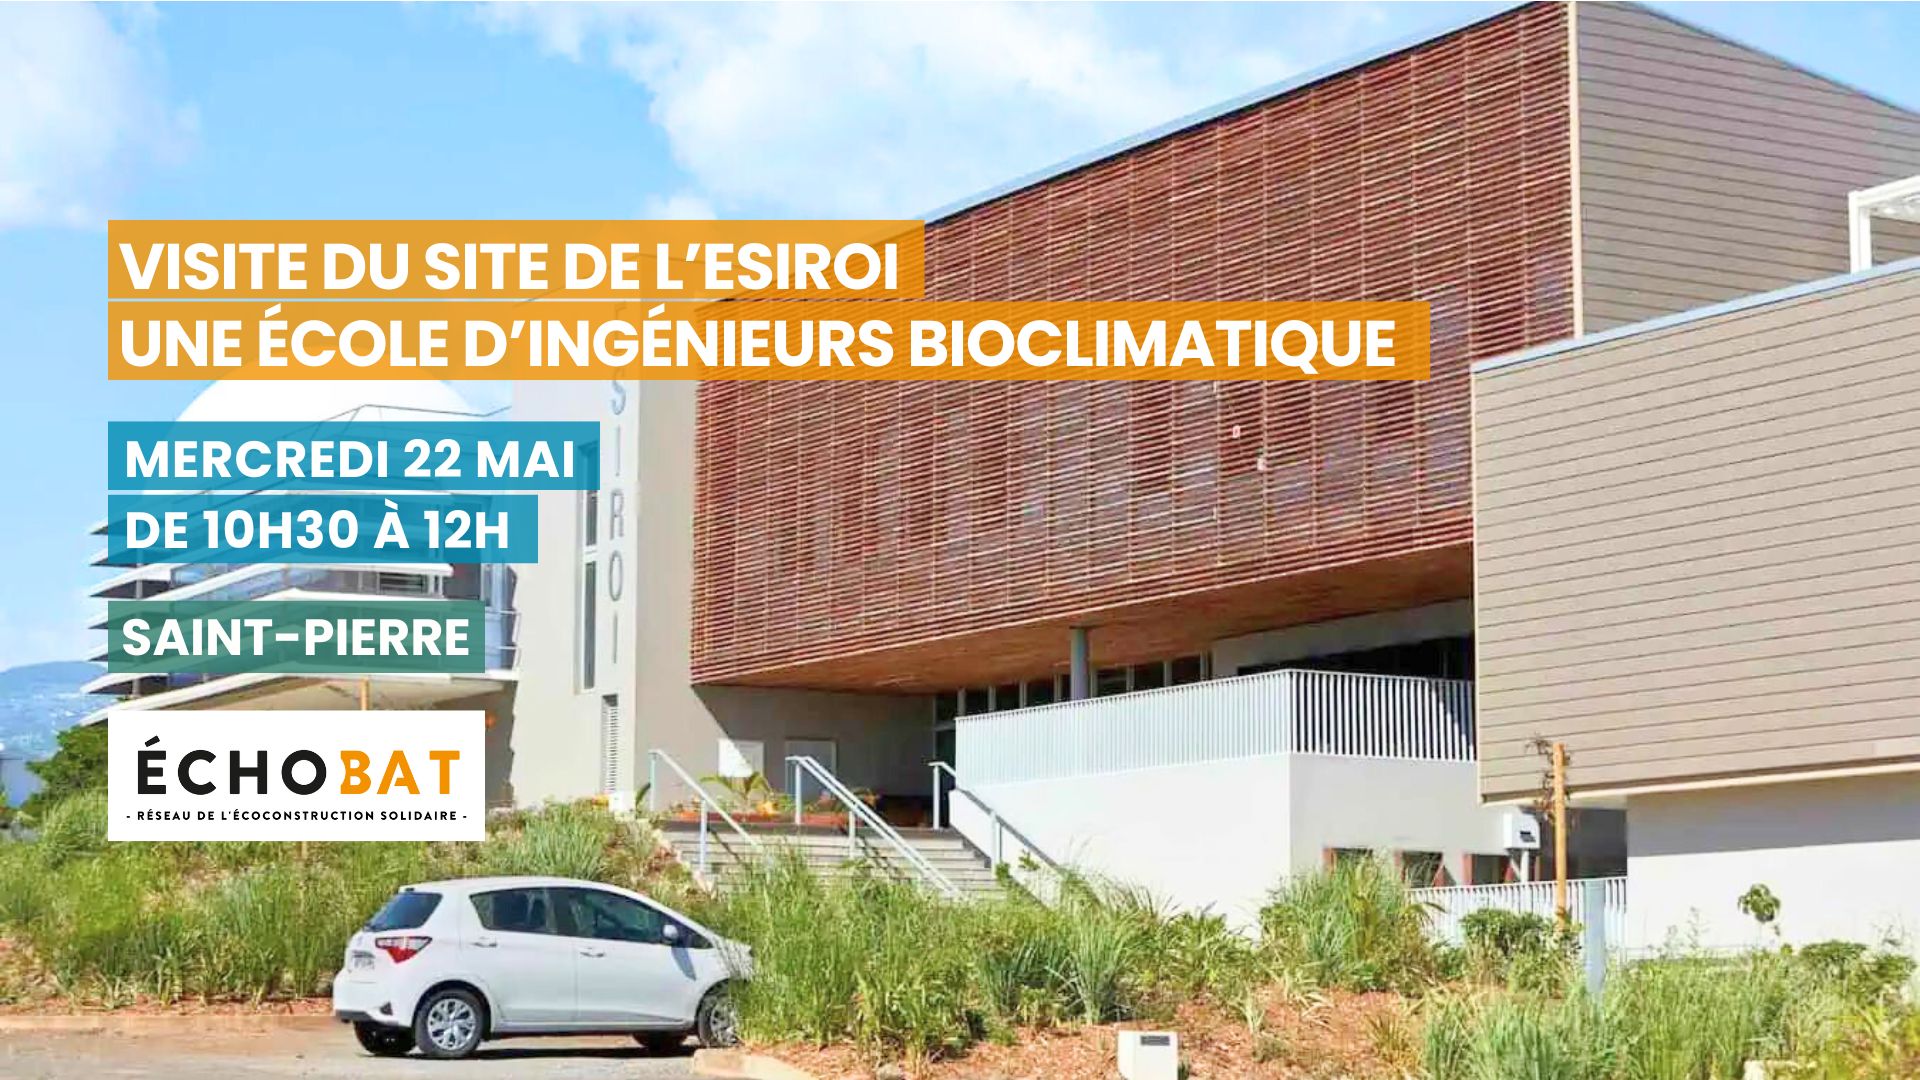 Visite du site de l’ESIROI, une école d’ingénieurs bioclimatique